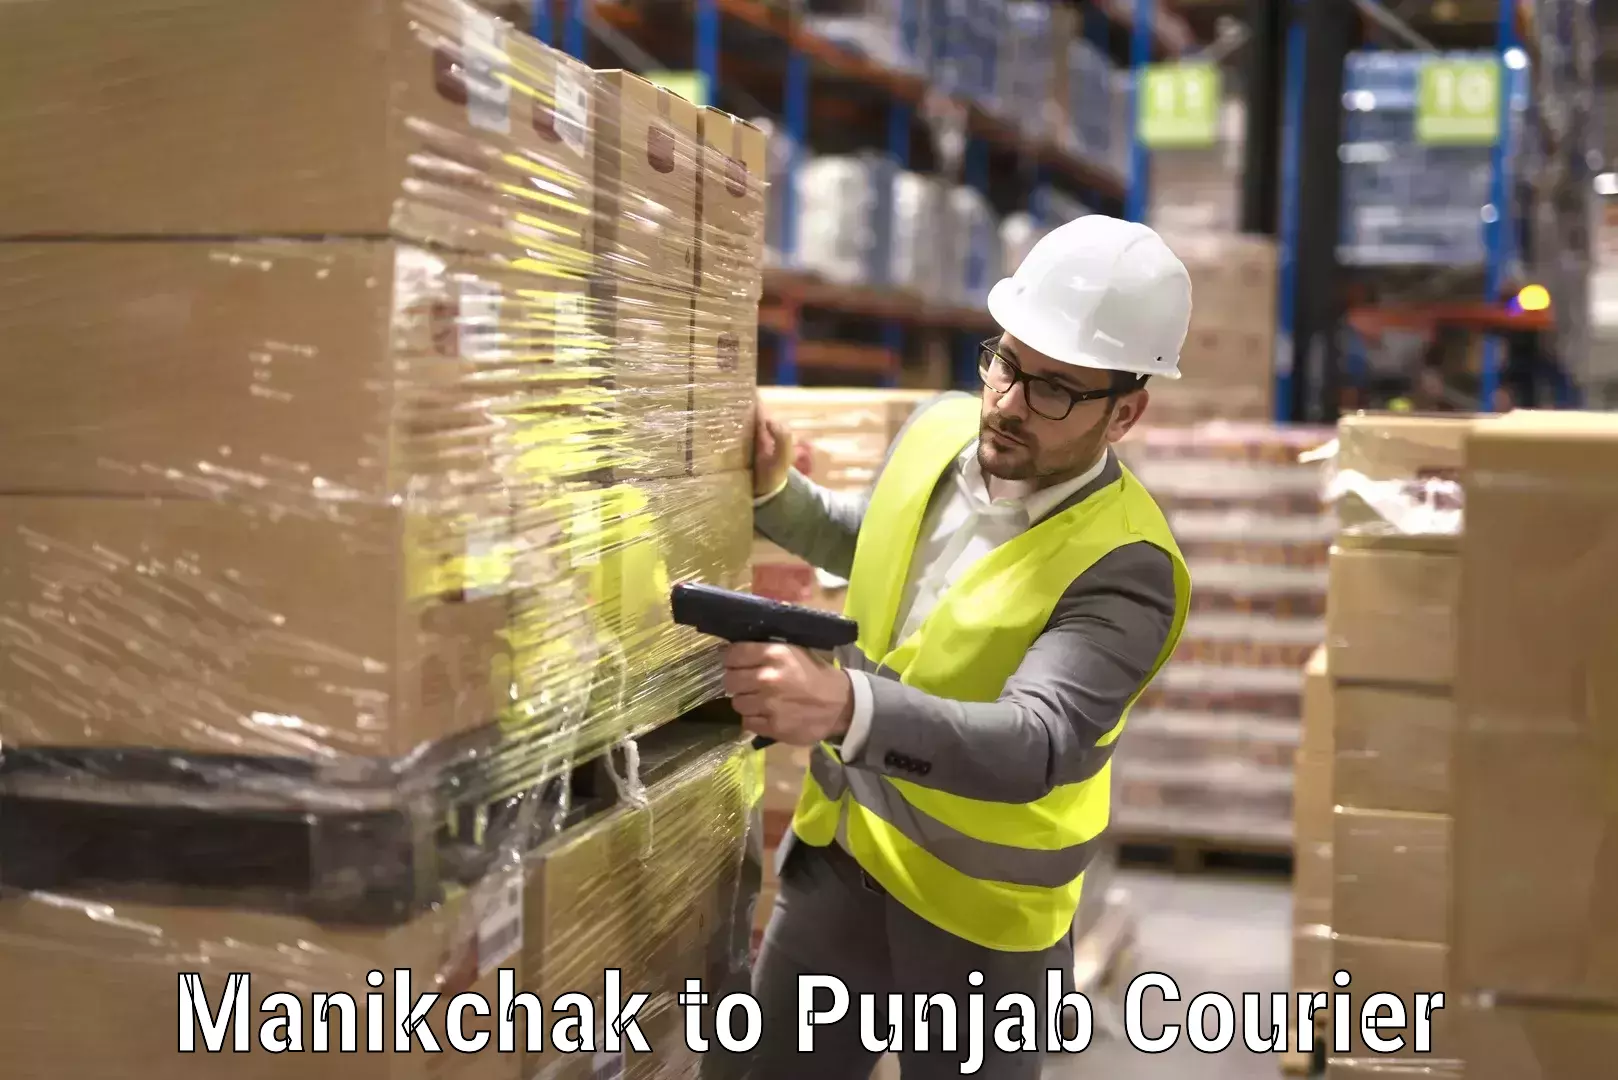 Furniture moving assistance in Manikchak to Punjab